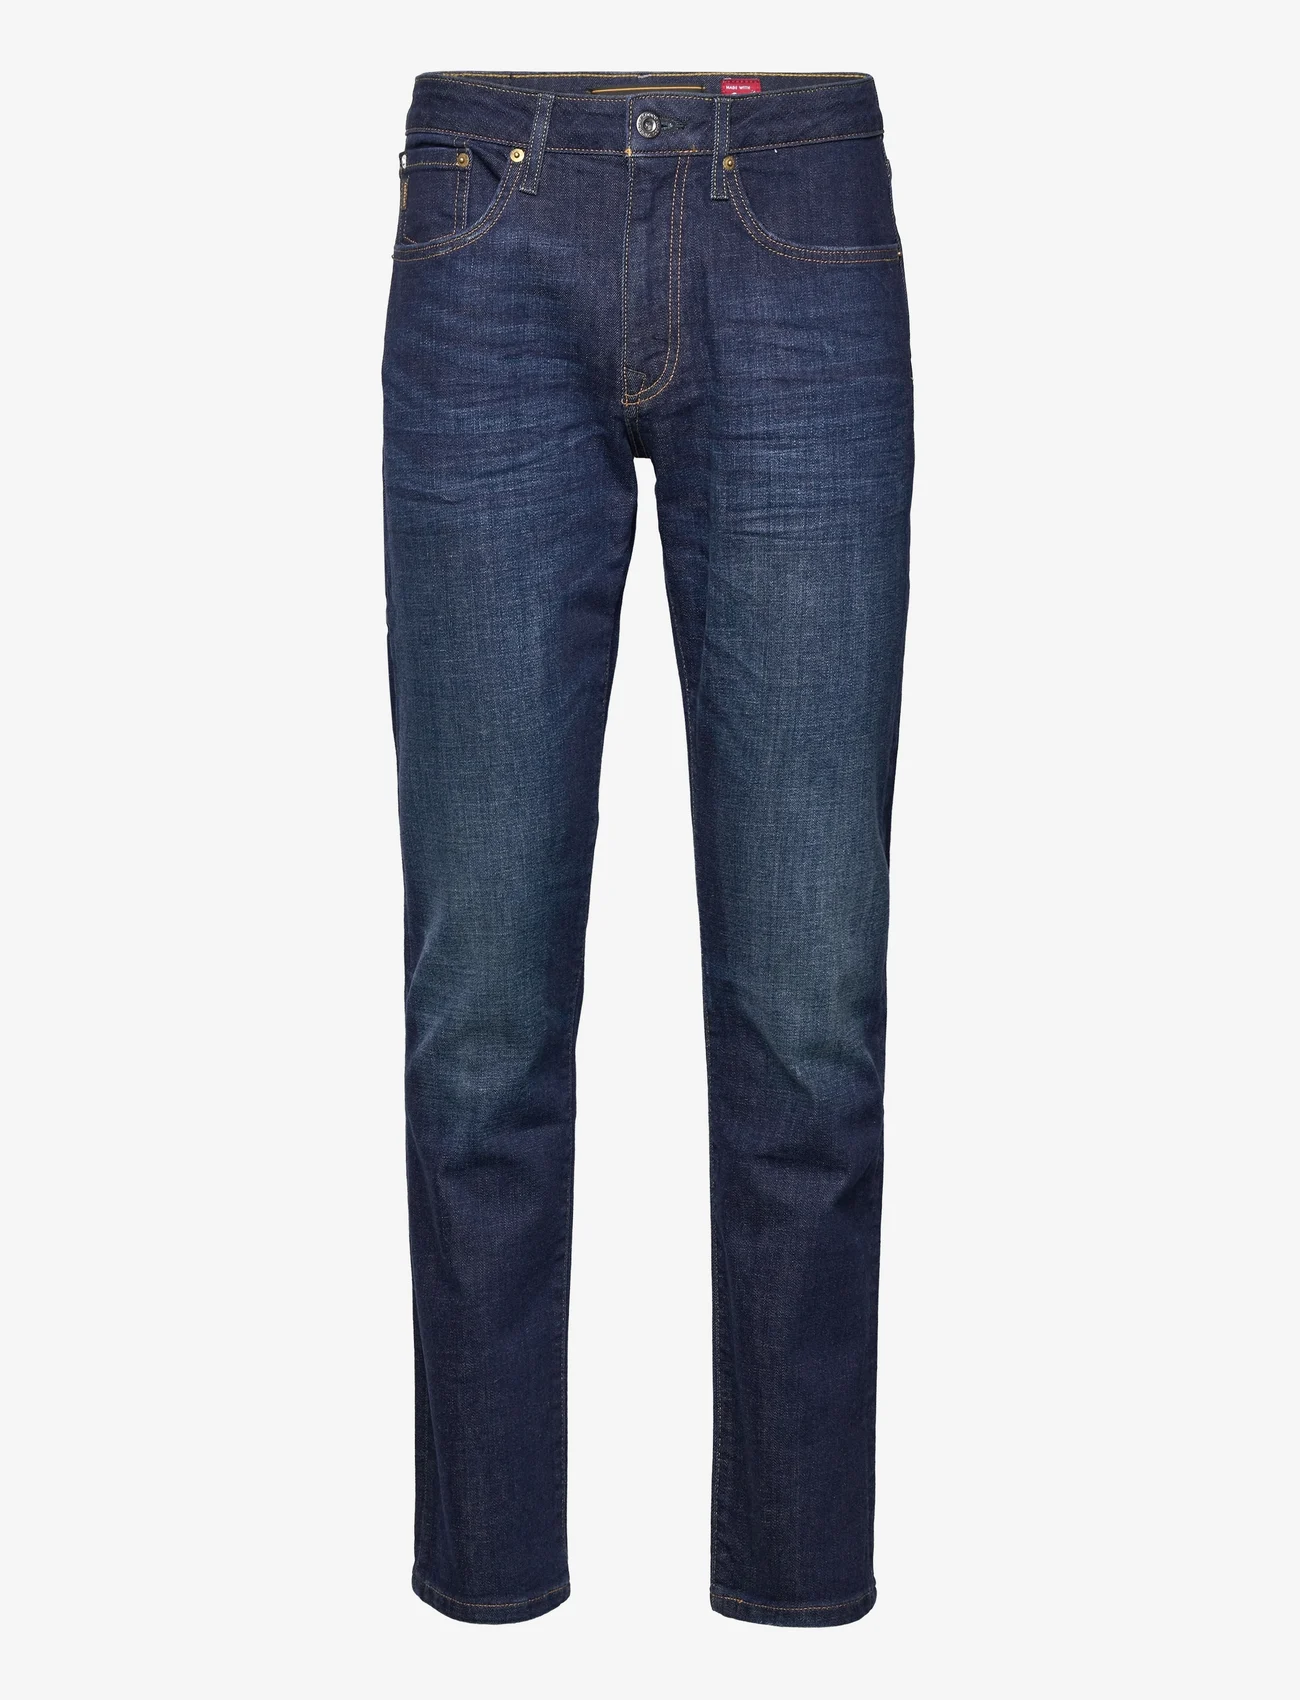 Superdry - VINTAGE SLIM STRAIGHT JEAN - džinsa bikses ar tievām starām - rutgers dark ink - 0